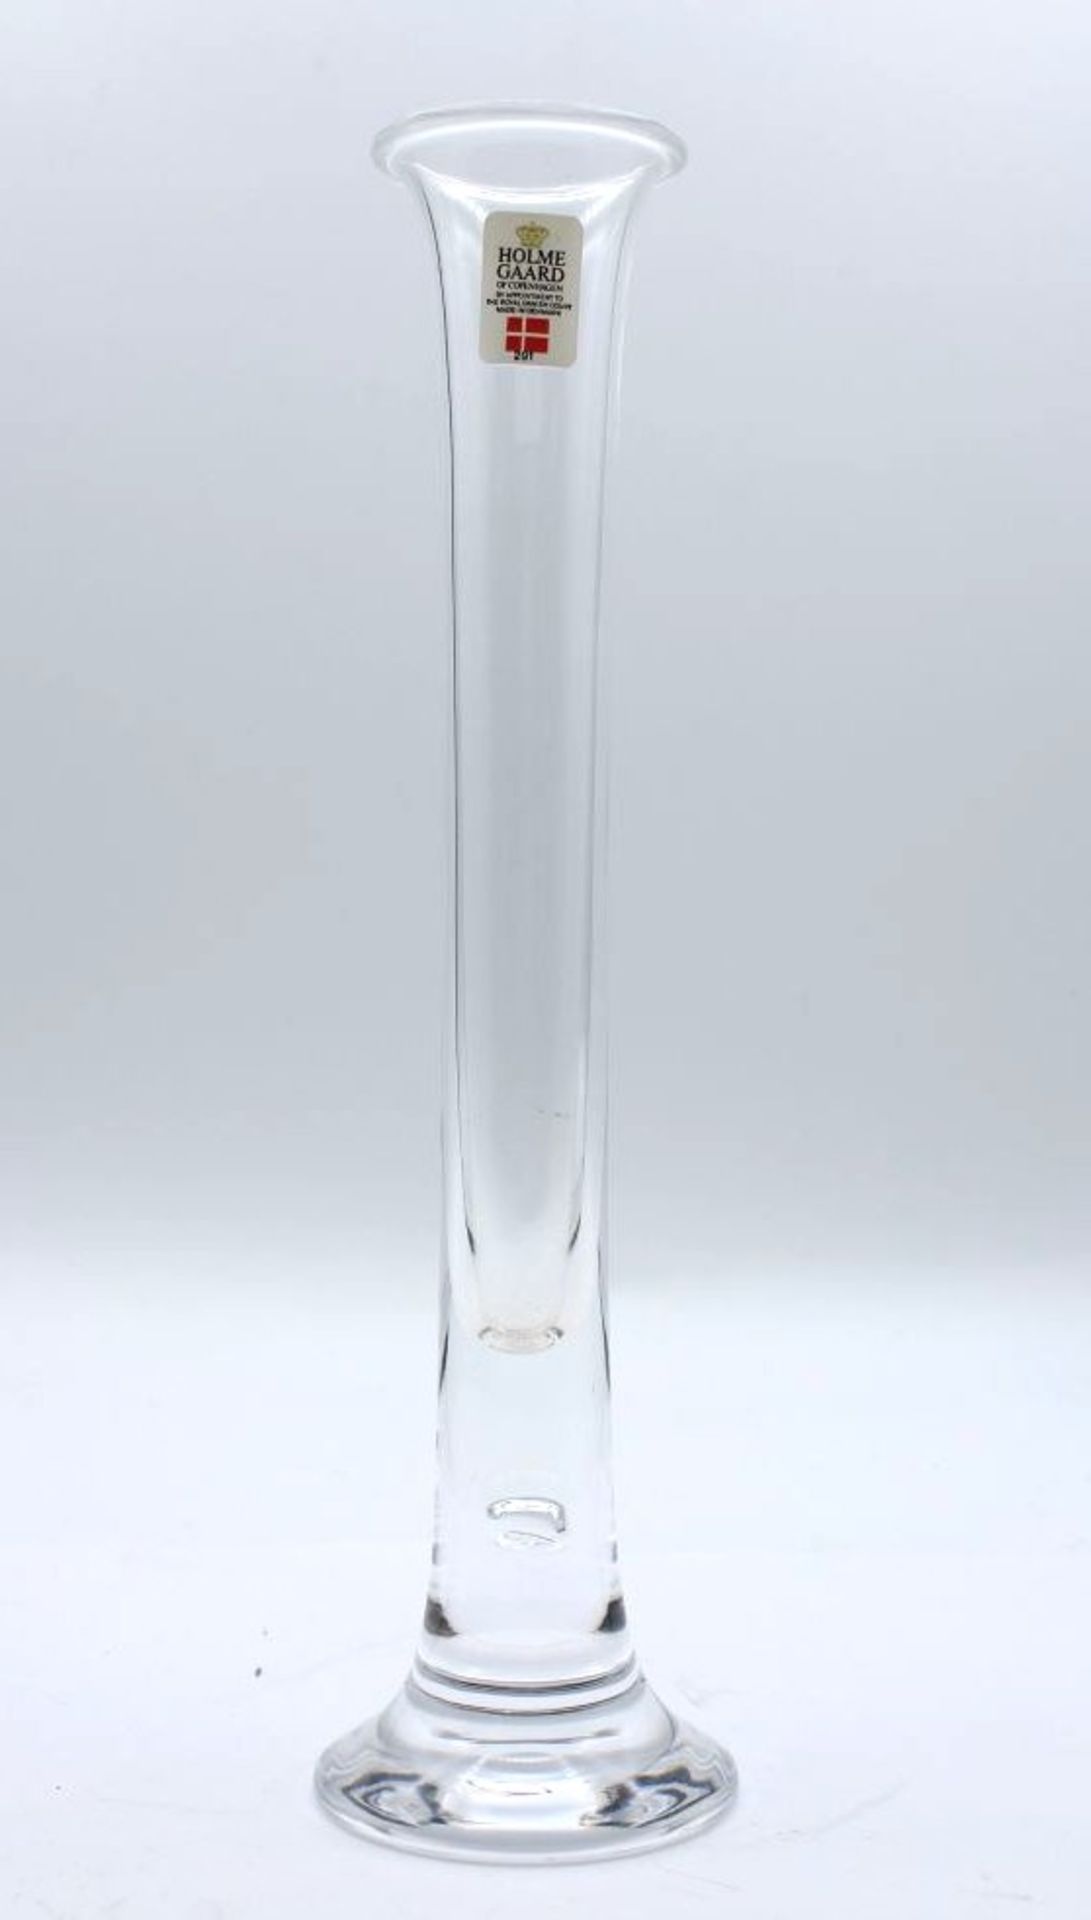 Stiel-Vase, Holmegaard, farbloses Glas, H-21cm.- - -22.61 % buyer's premium on the hammer priceVAT